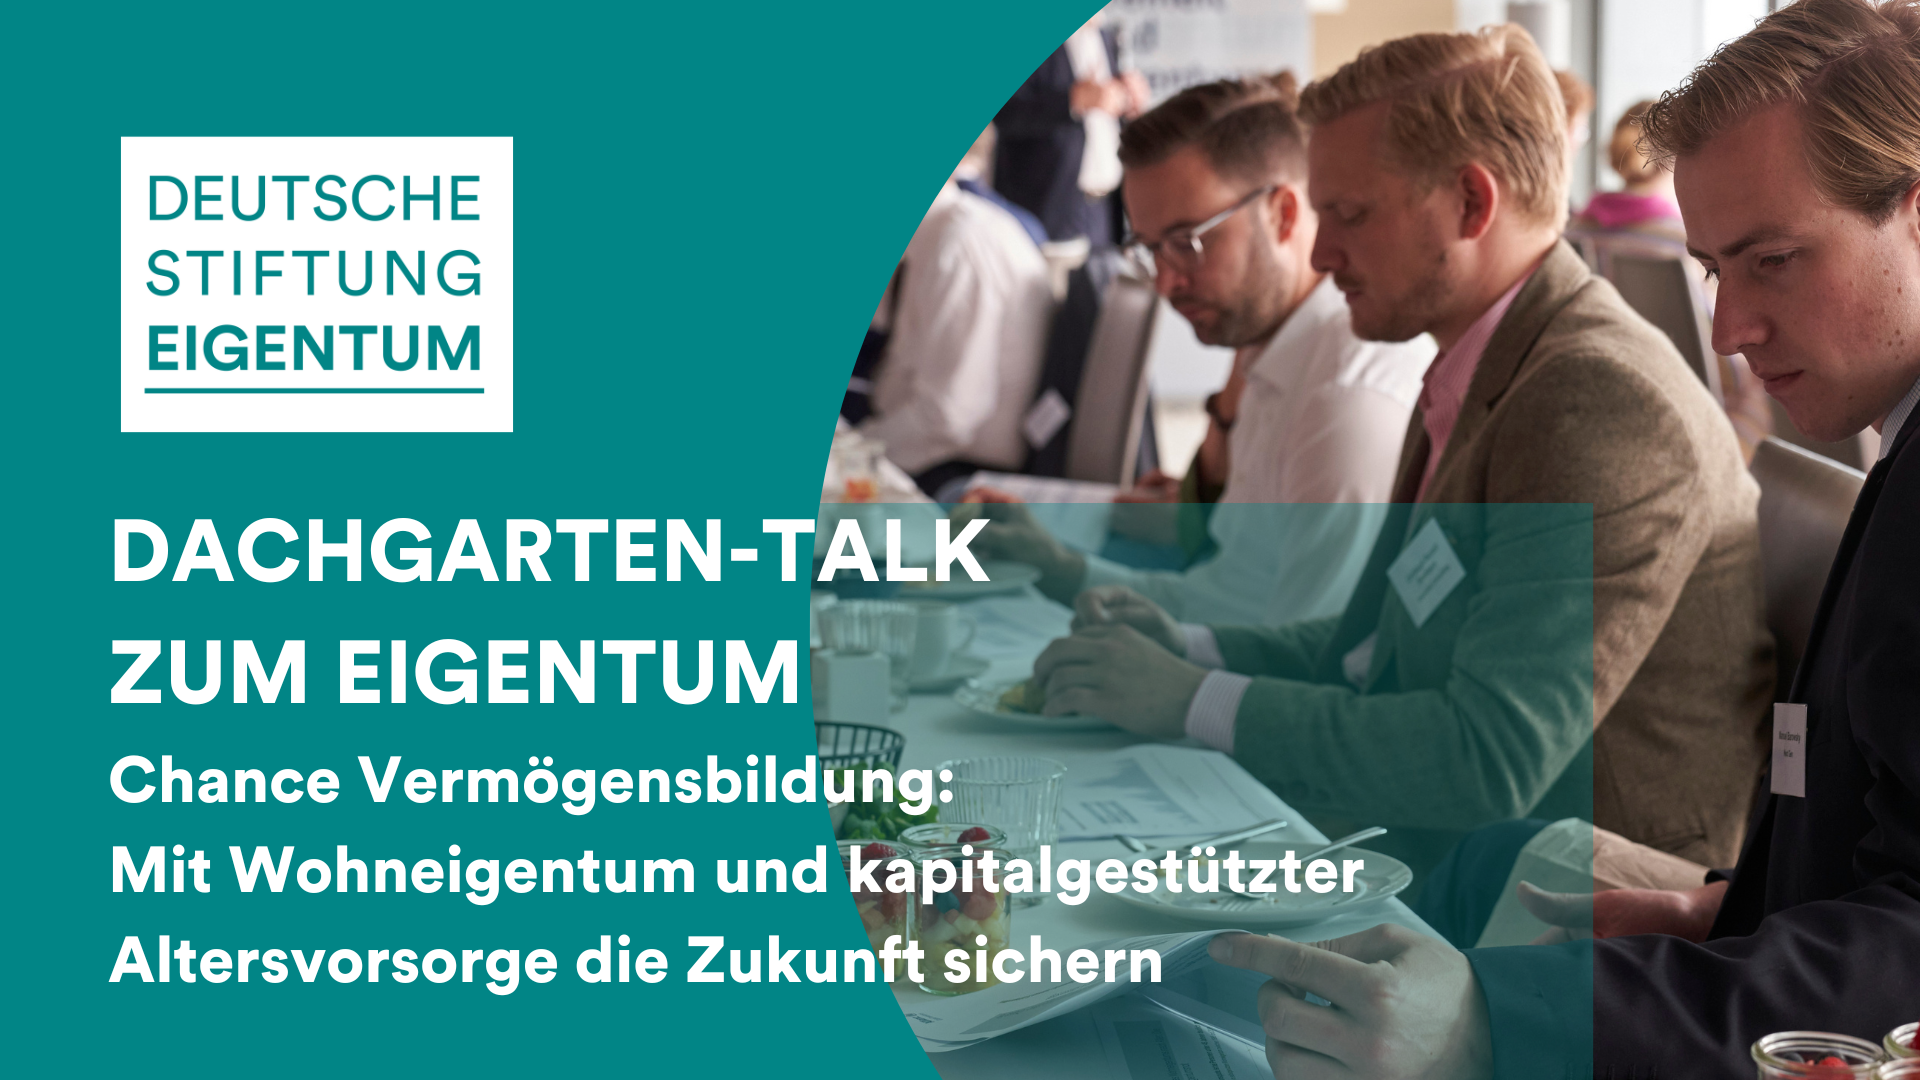 2. Dachgarten-Talk zum Eigentum